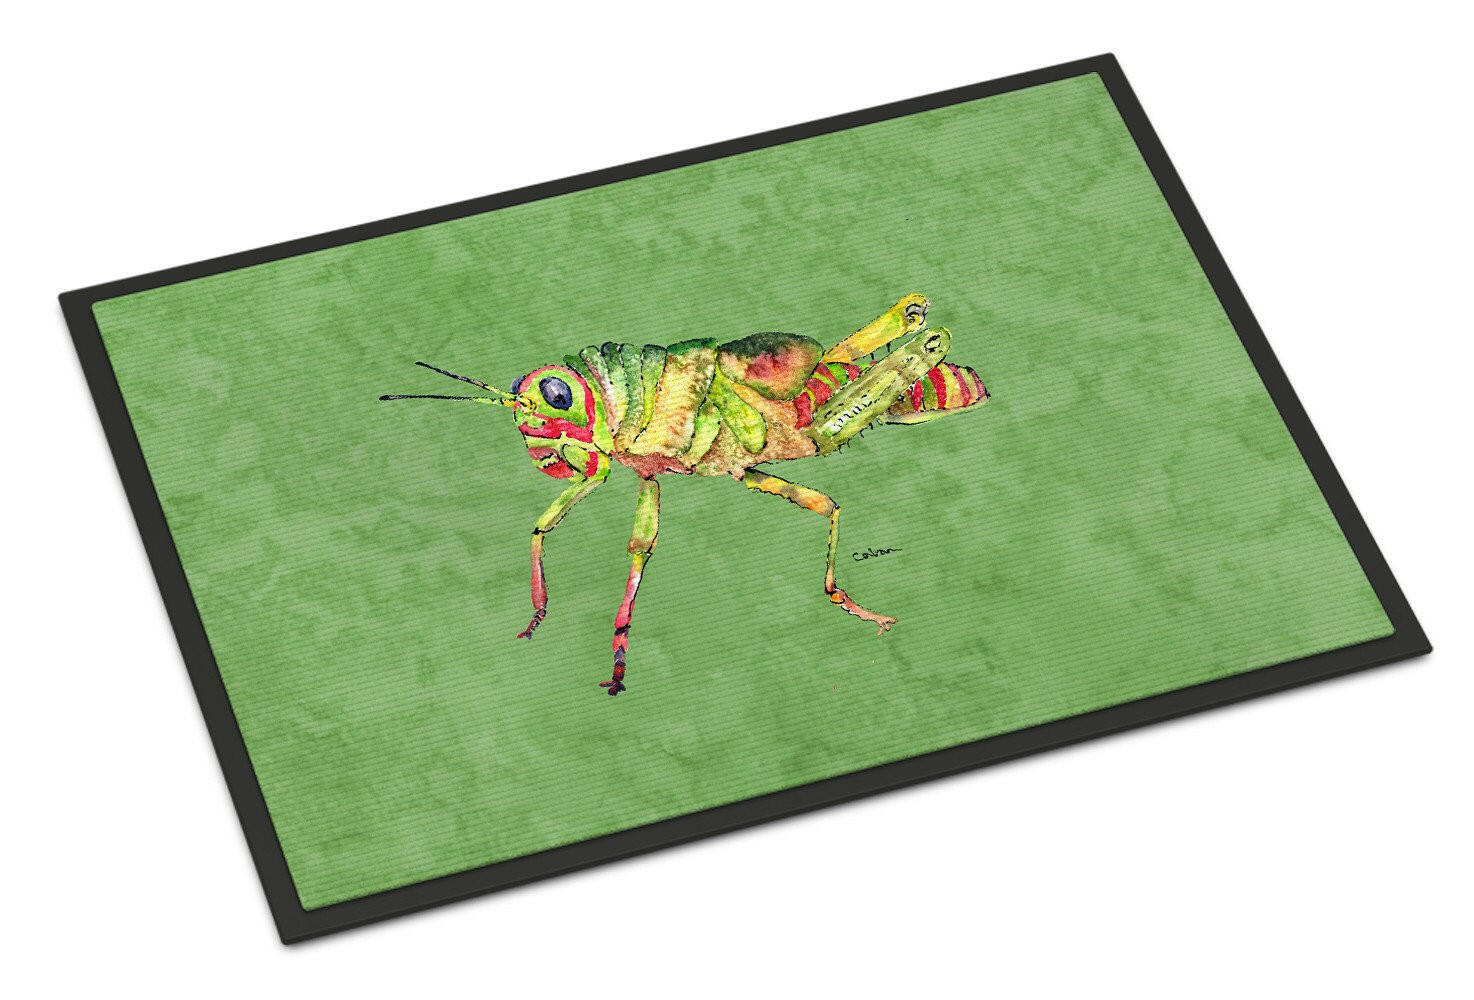 Grasshopper on Avacado Indoor or Outdoor Mat 24x36 Doormat - the-store.com